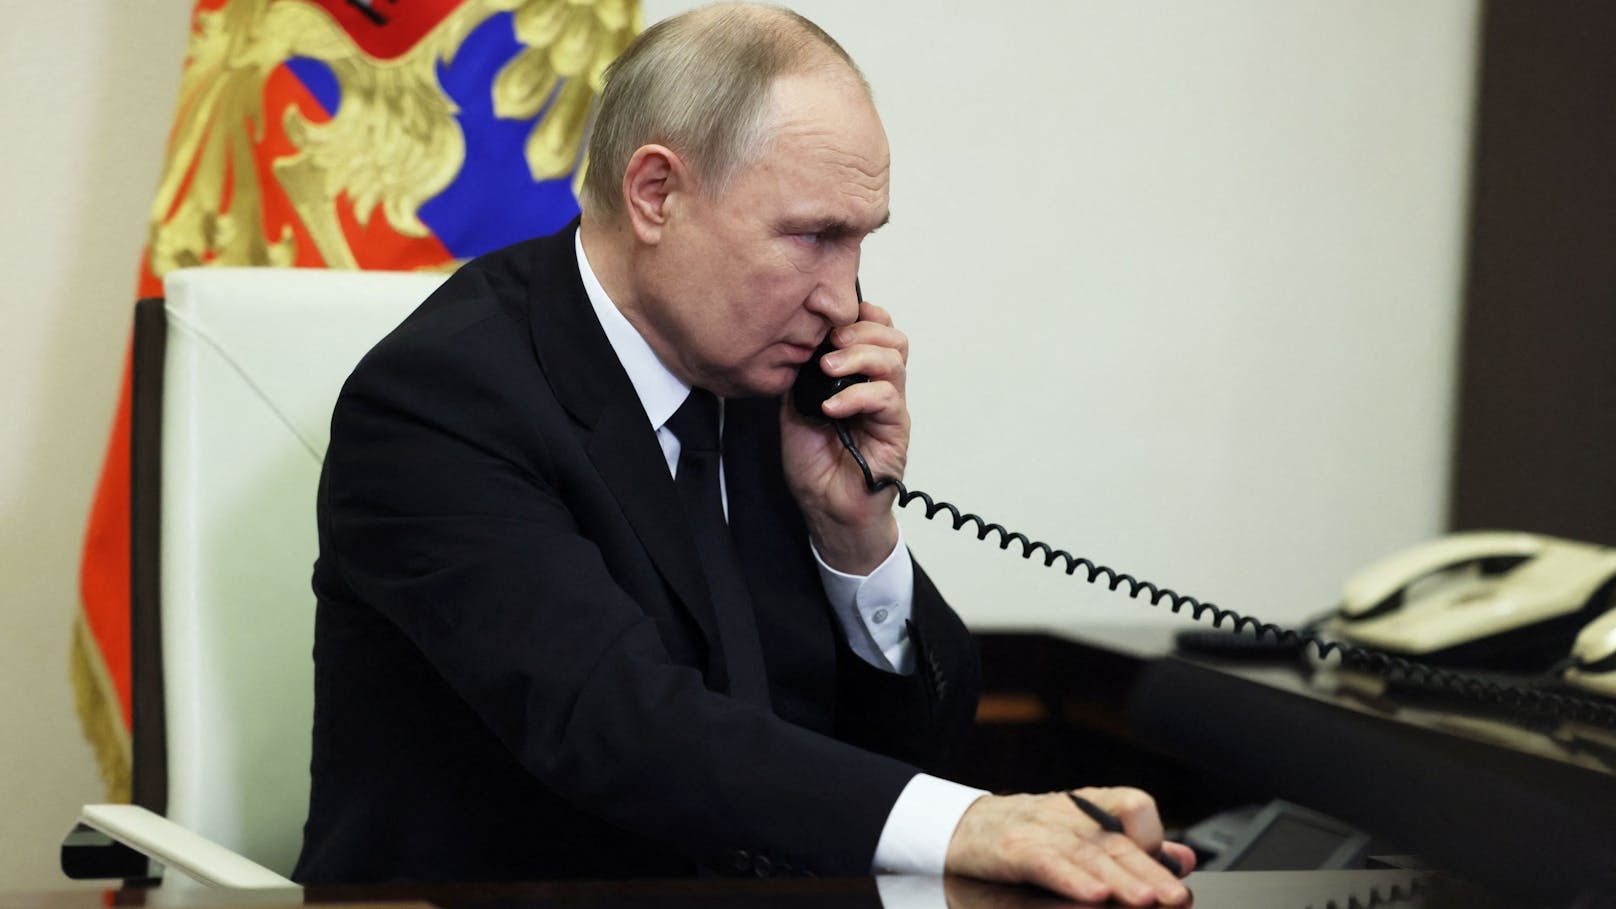 Über 130 Tote – jetzt bricht Putin sein Schweigen